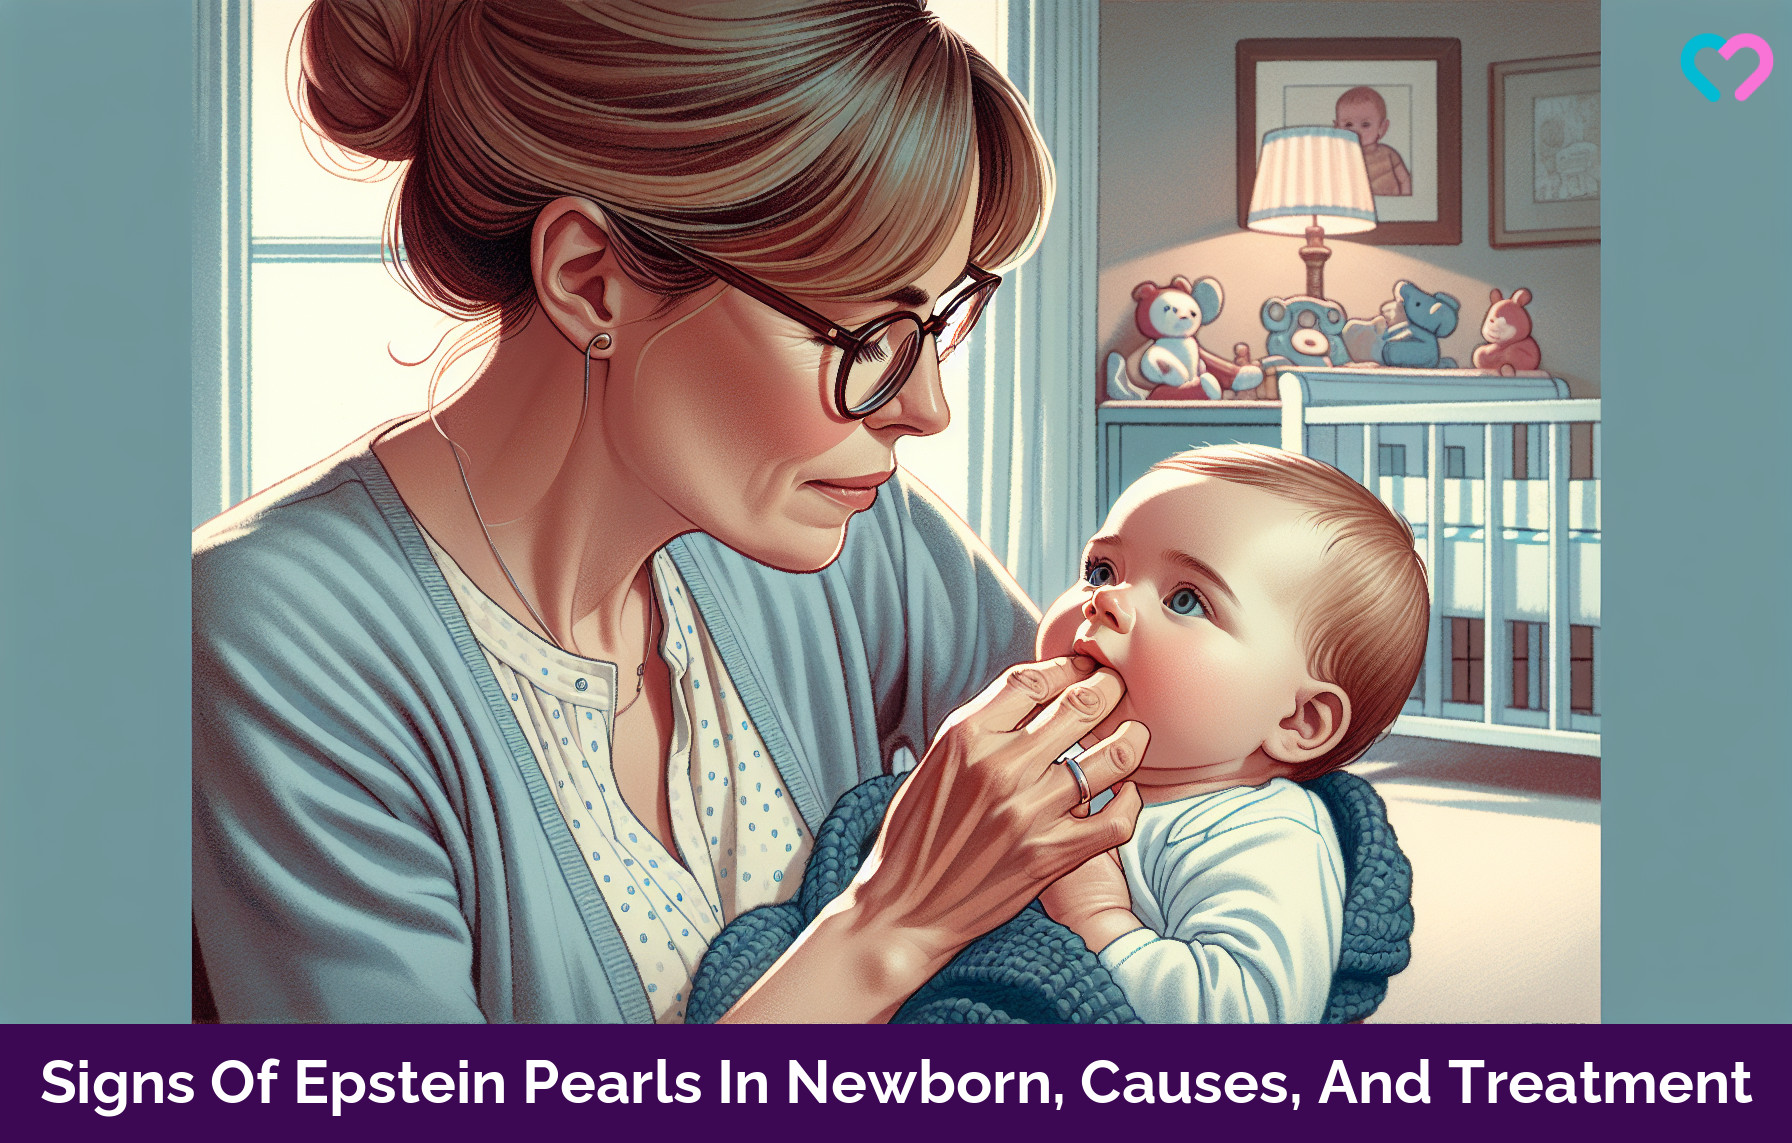 Epstein Pearls in newborn Babies_illustration